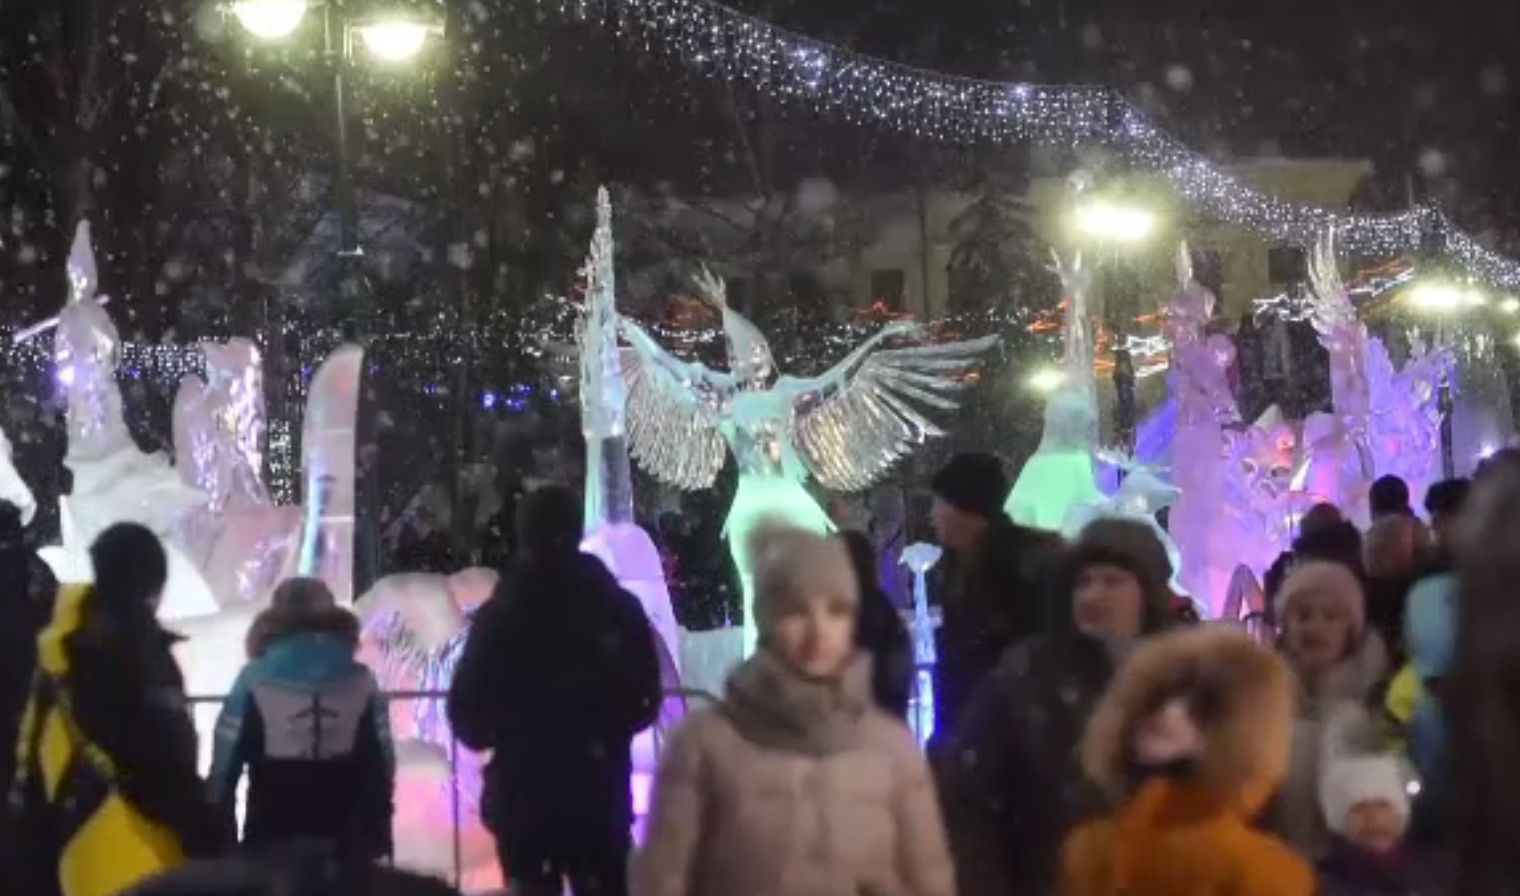 Concurs de sculpturi în gheață inspirat din basmele rusești, în Siberia. Ce sumă a fost în joc